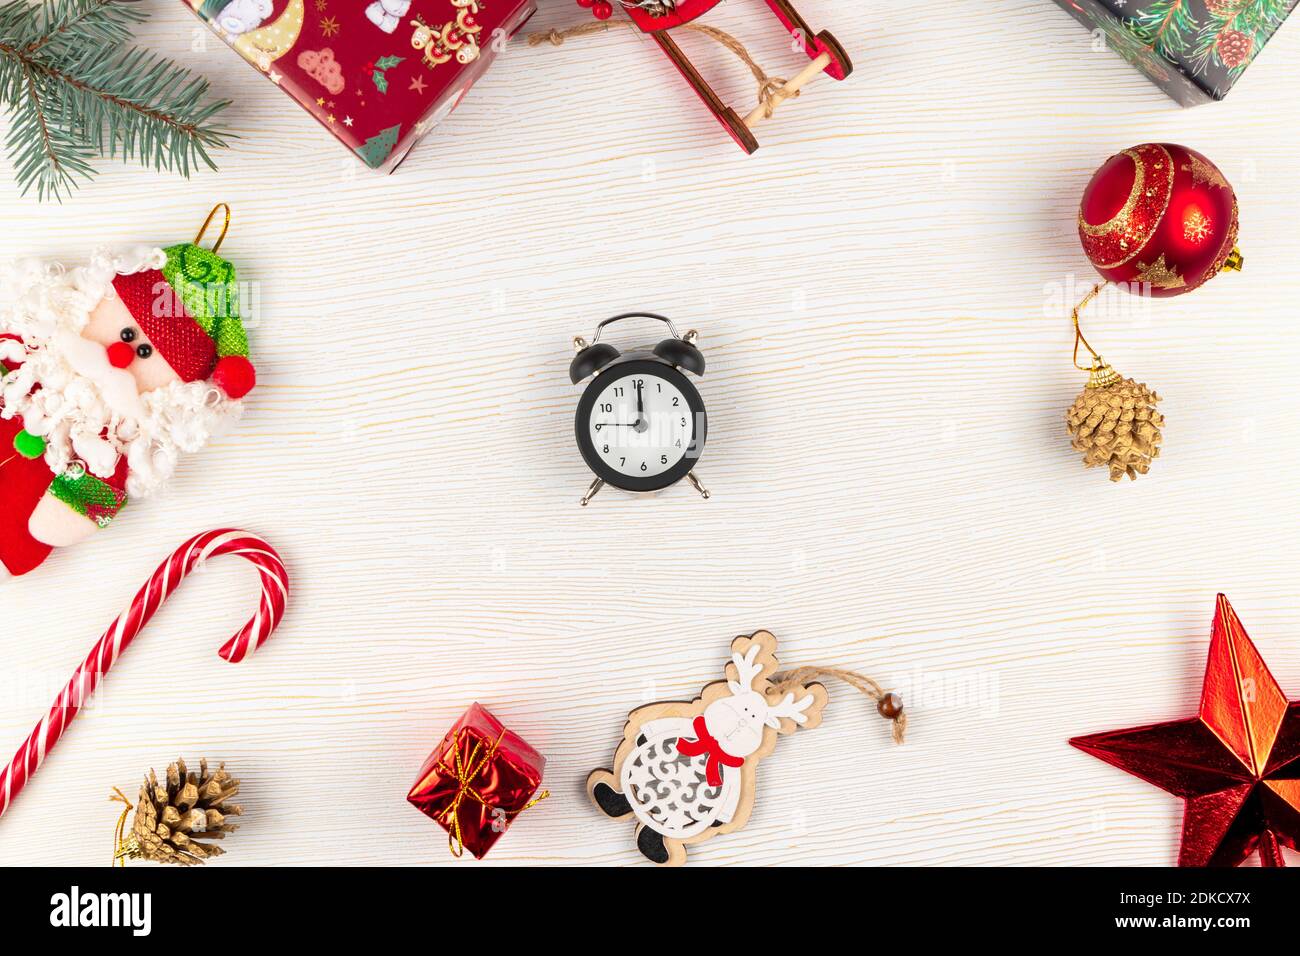 weihnachtsmann Schlitten, Geschenkboxen, weihnachtsspielzeug, Fichtenzweig, Wecker und Stern auf weißem Hintergrund Stockfoto